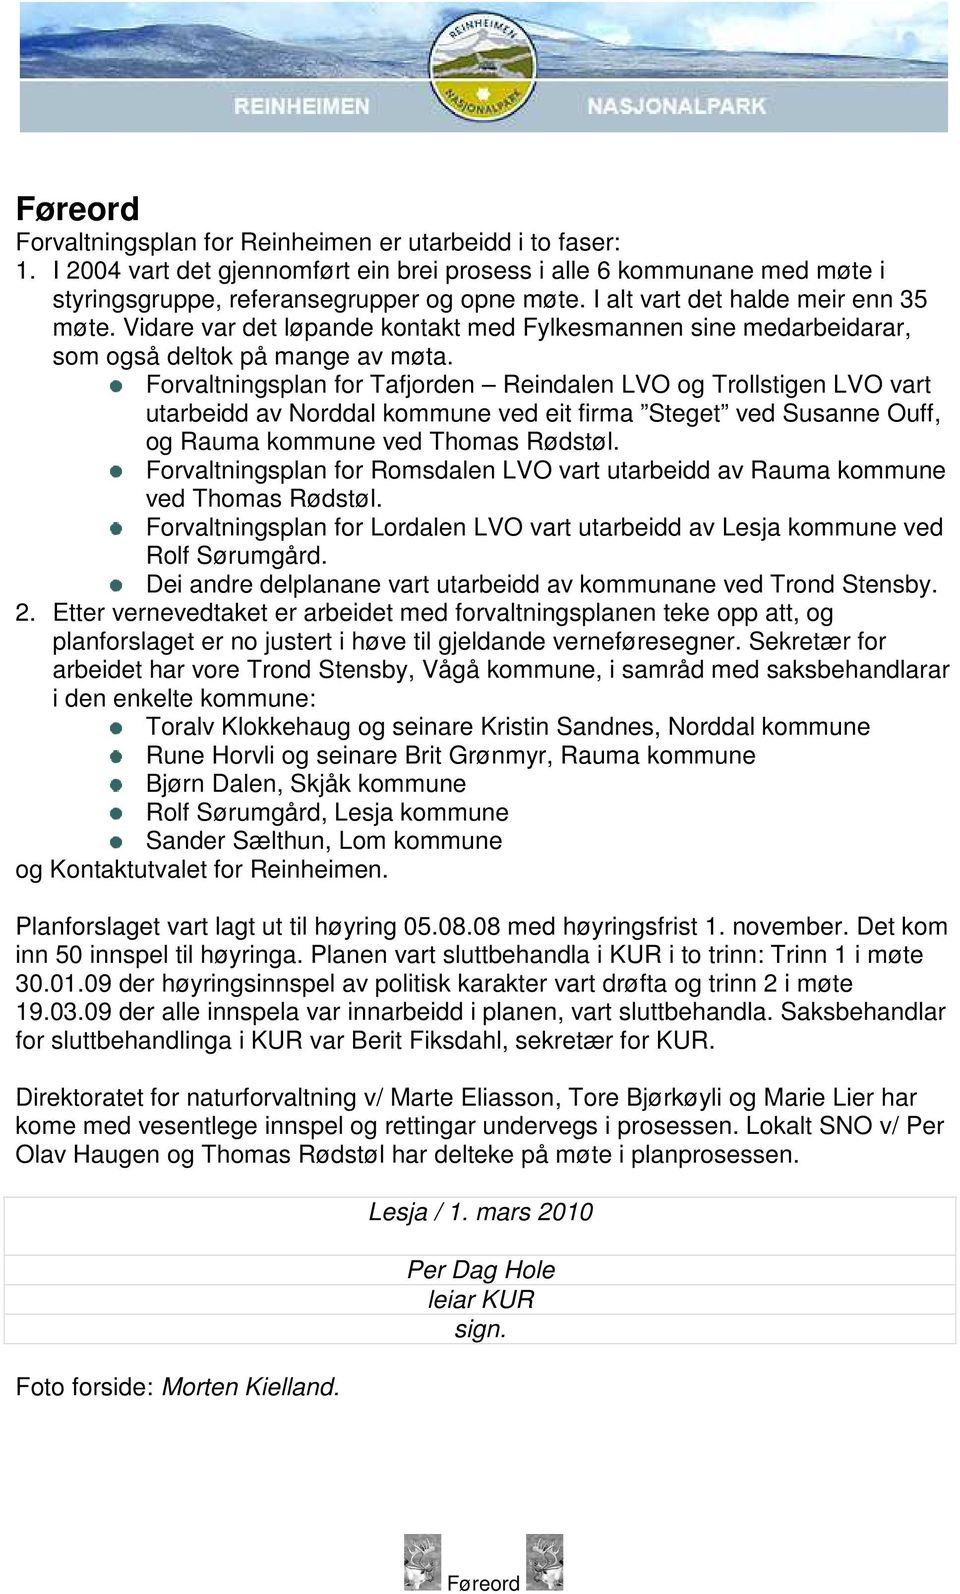 Forvaltningsplan for Tafjorden Reindalen LVO og Trollstigen LVO vart utarbeidd av Norddal kommune ved eit firma Steget ved Susanne Ouff, og Rauma kommune ved Thomas Rødstøl.